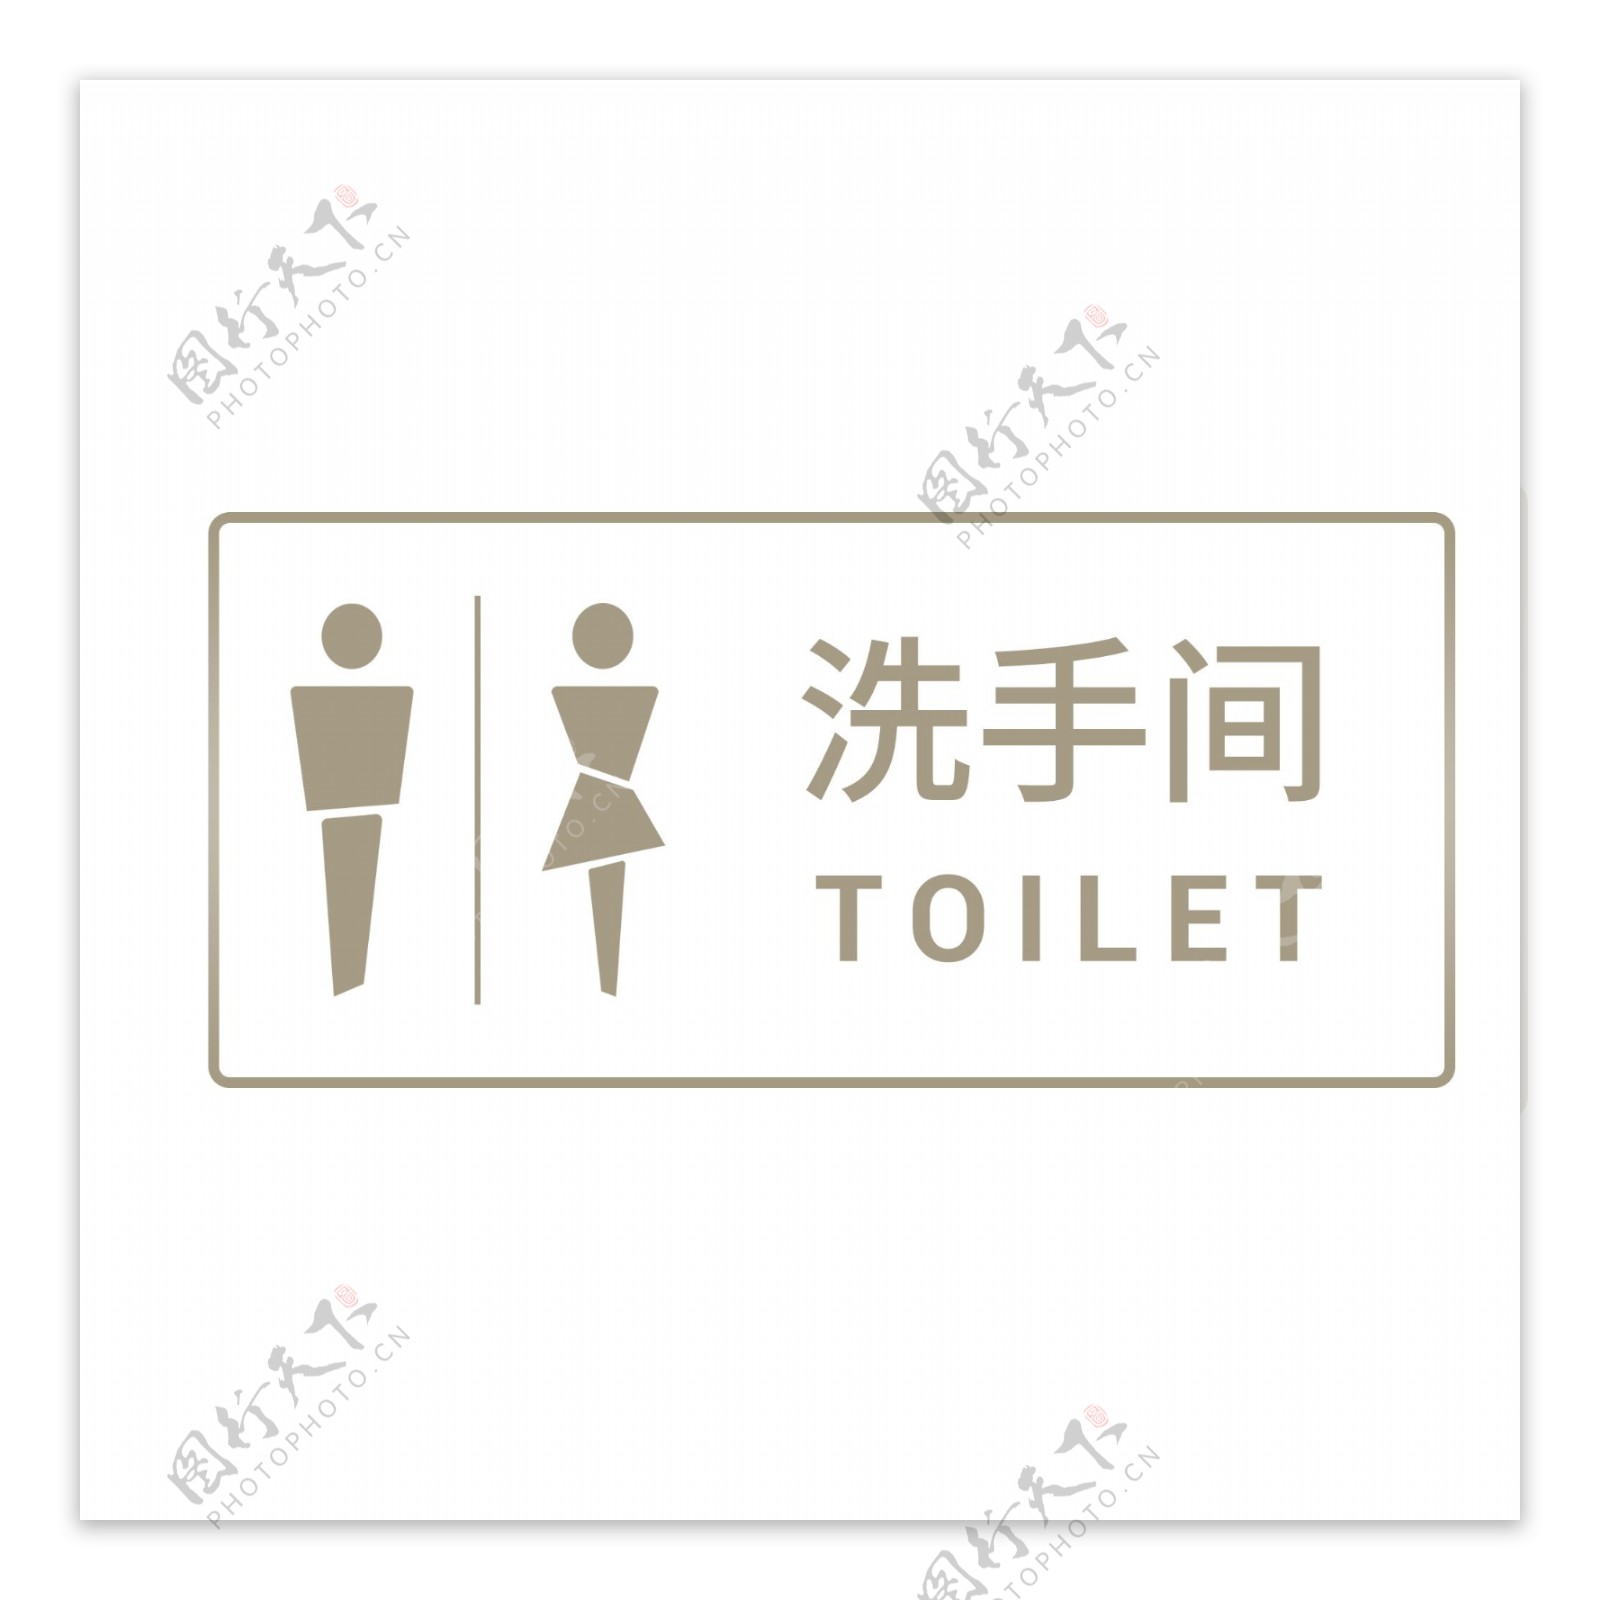 男女洗手间厕所标志